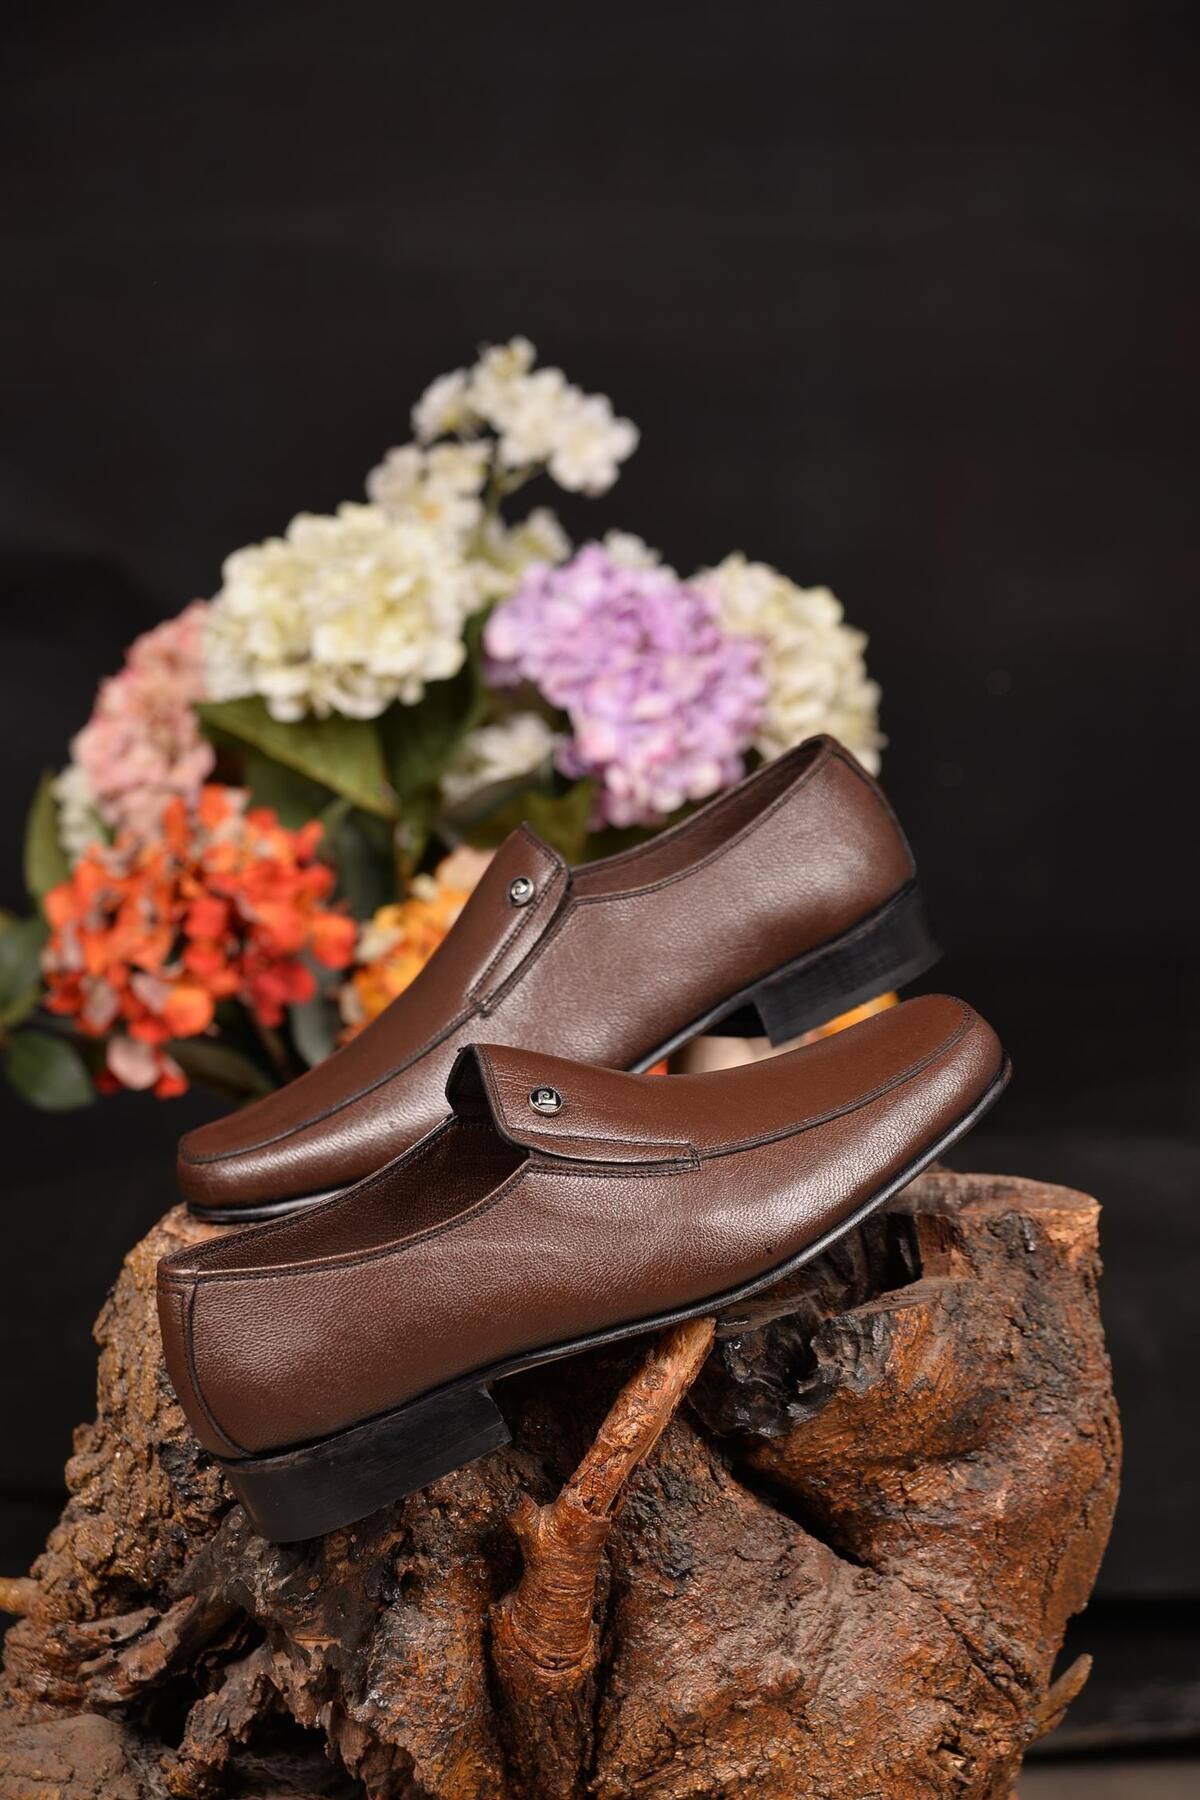 Pierre Cardin Erkek %100Deri Kahve Kösele Ayakkabı Yenilikçi Tarzıyla Şıklığı Ve Konforu BirArada Sunan Tarz Model